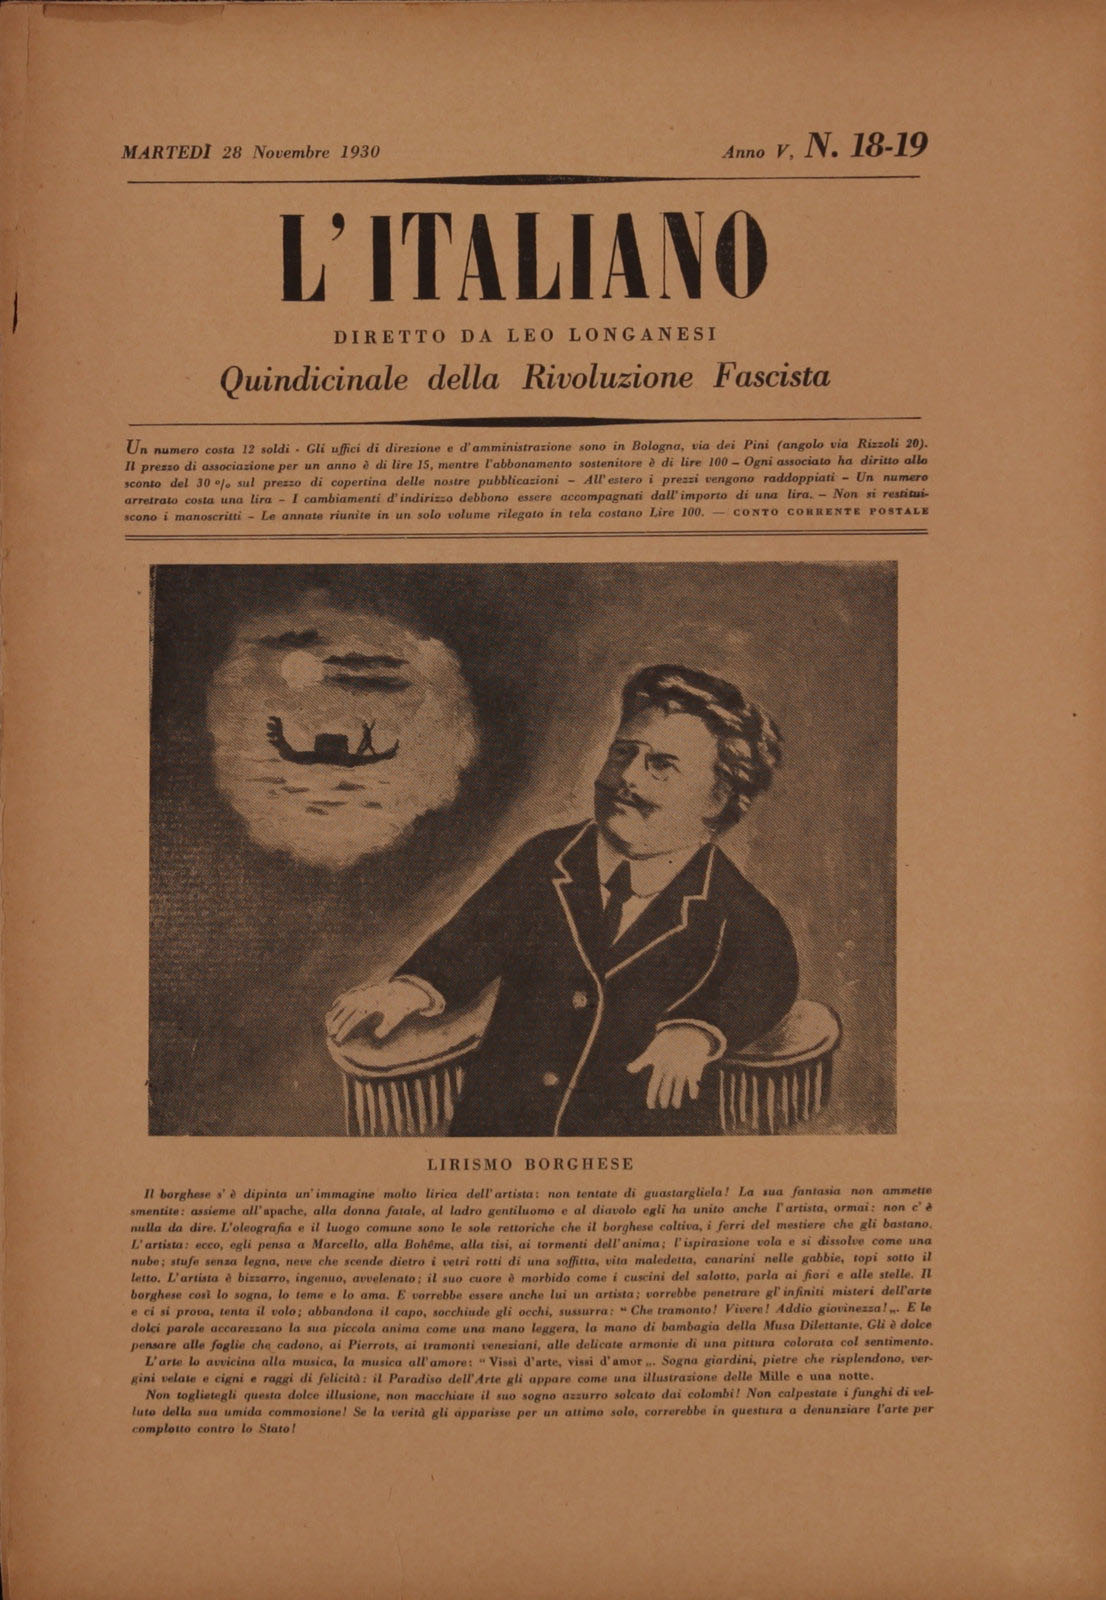 L'Italiano -  5 (1930), n. 18-19, p. 2-3